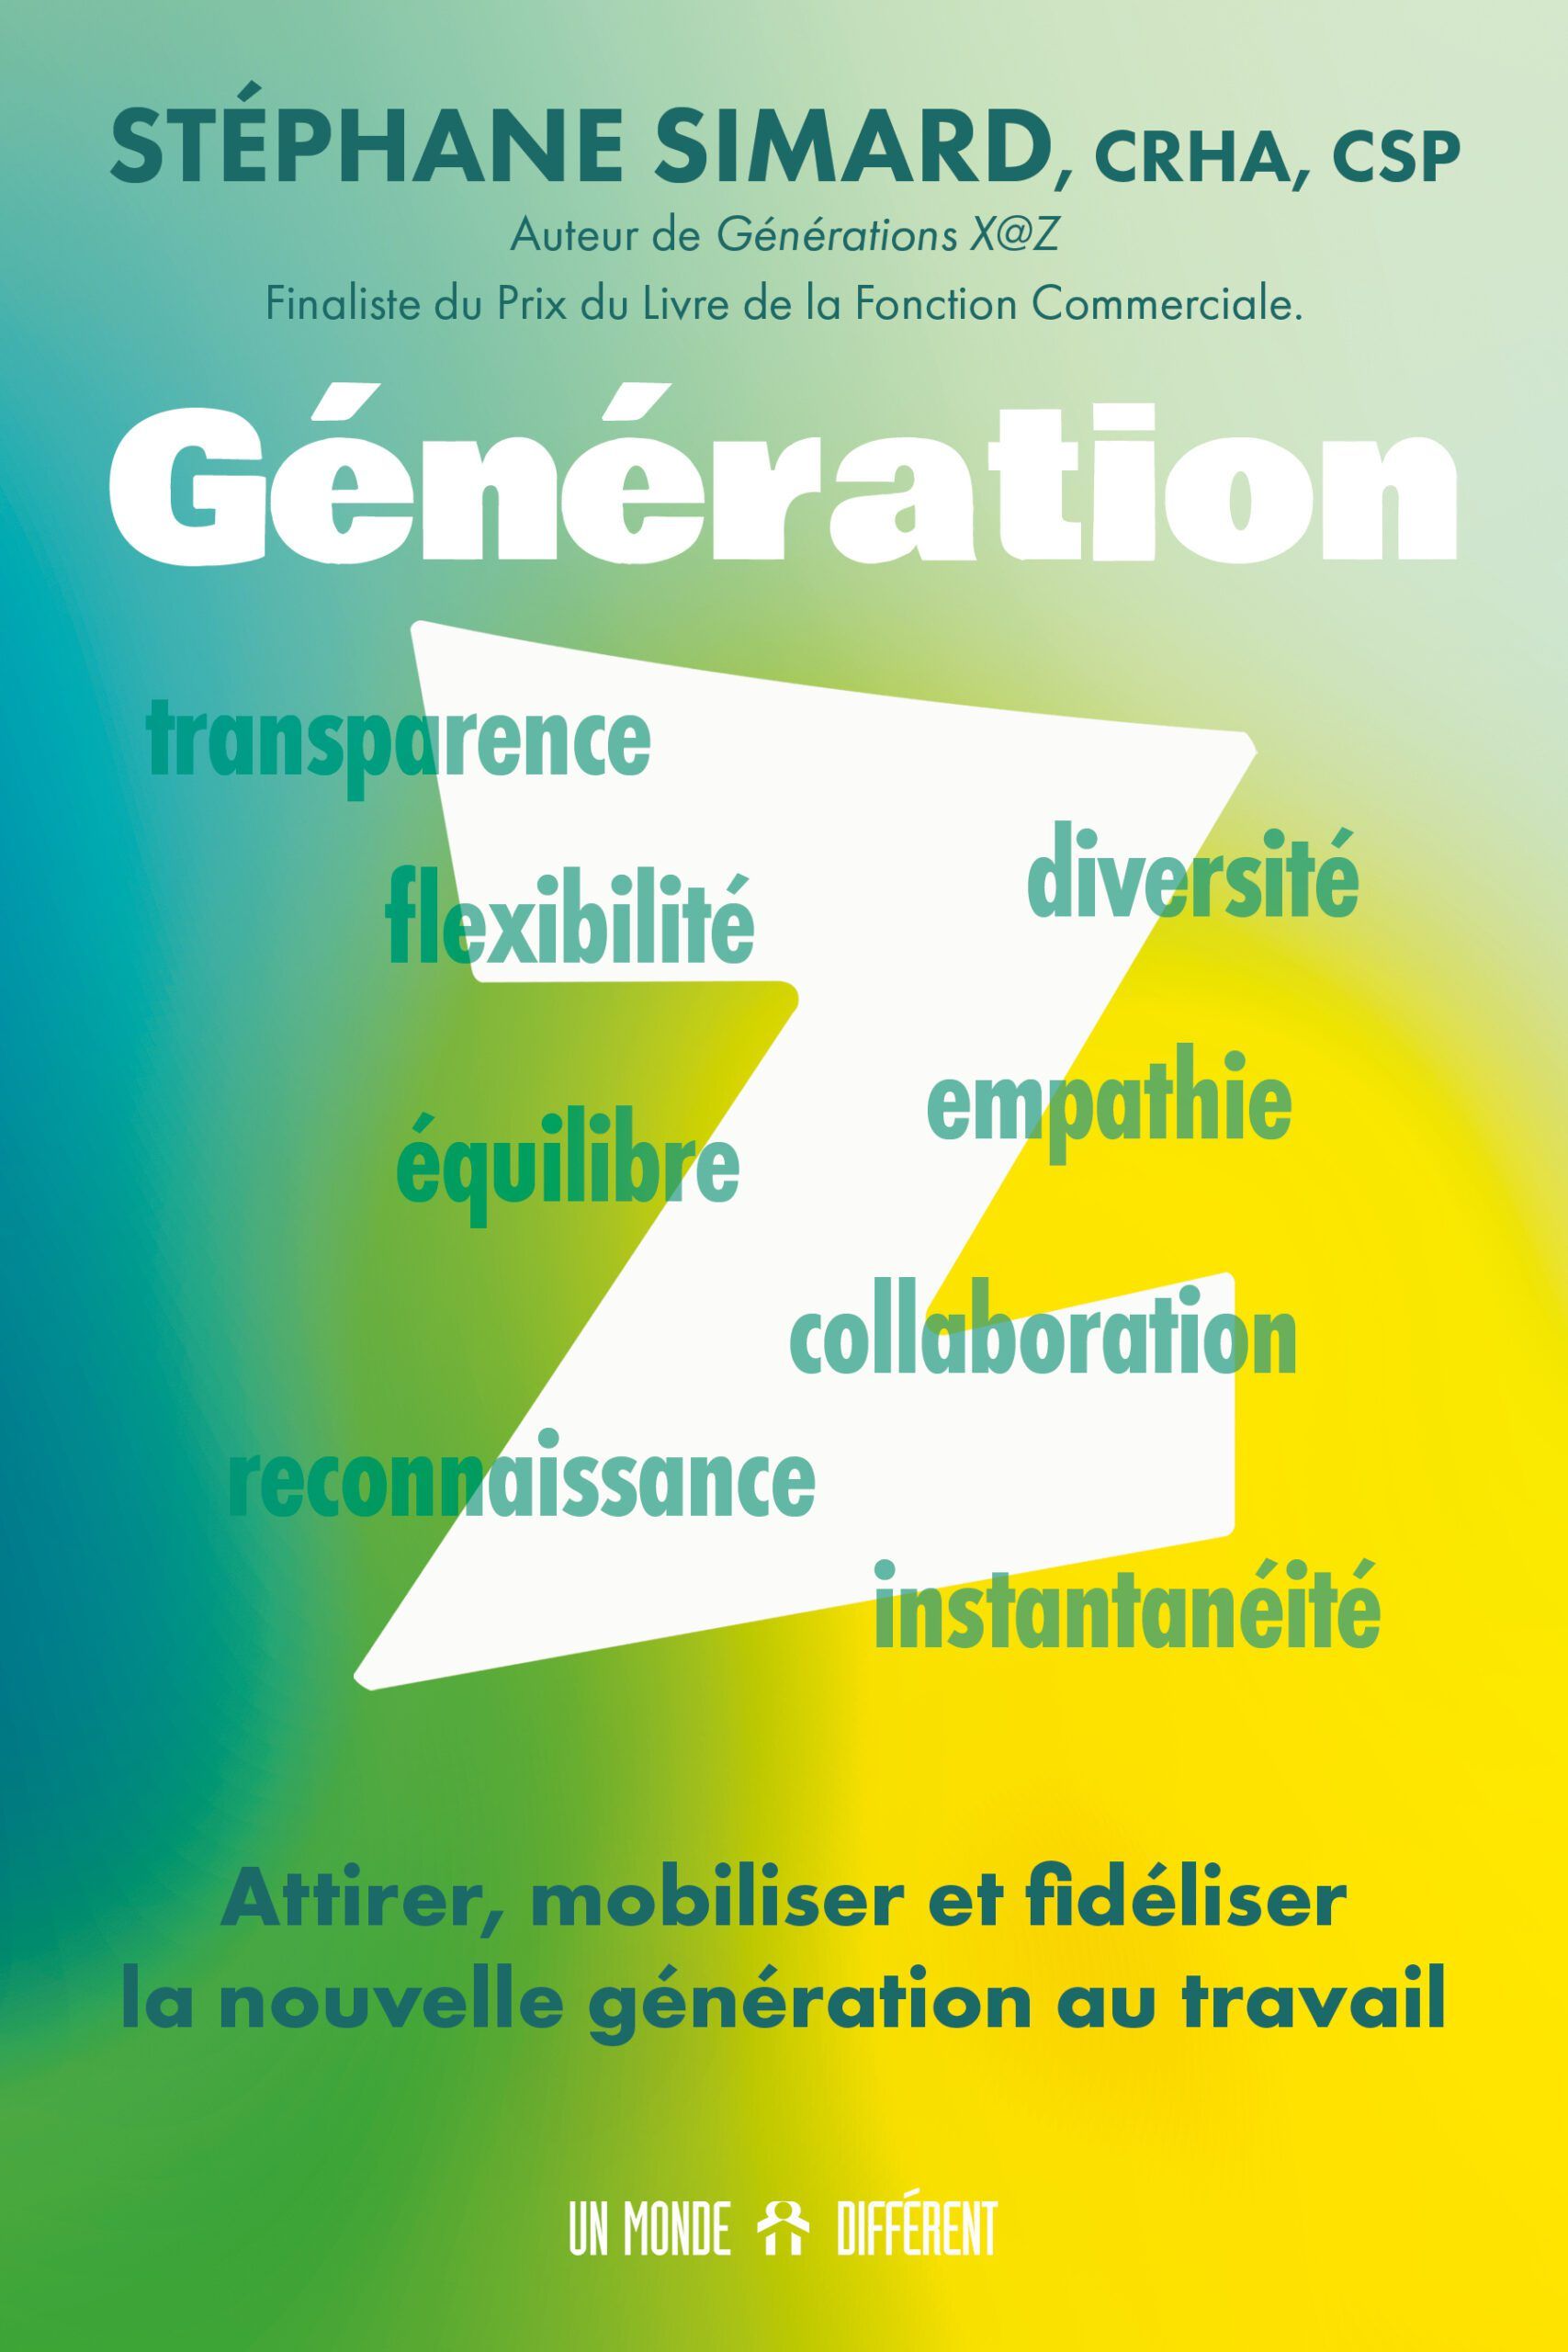 Unisson-conference-stephane-simard-GenerationZ